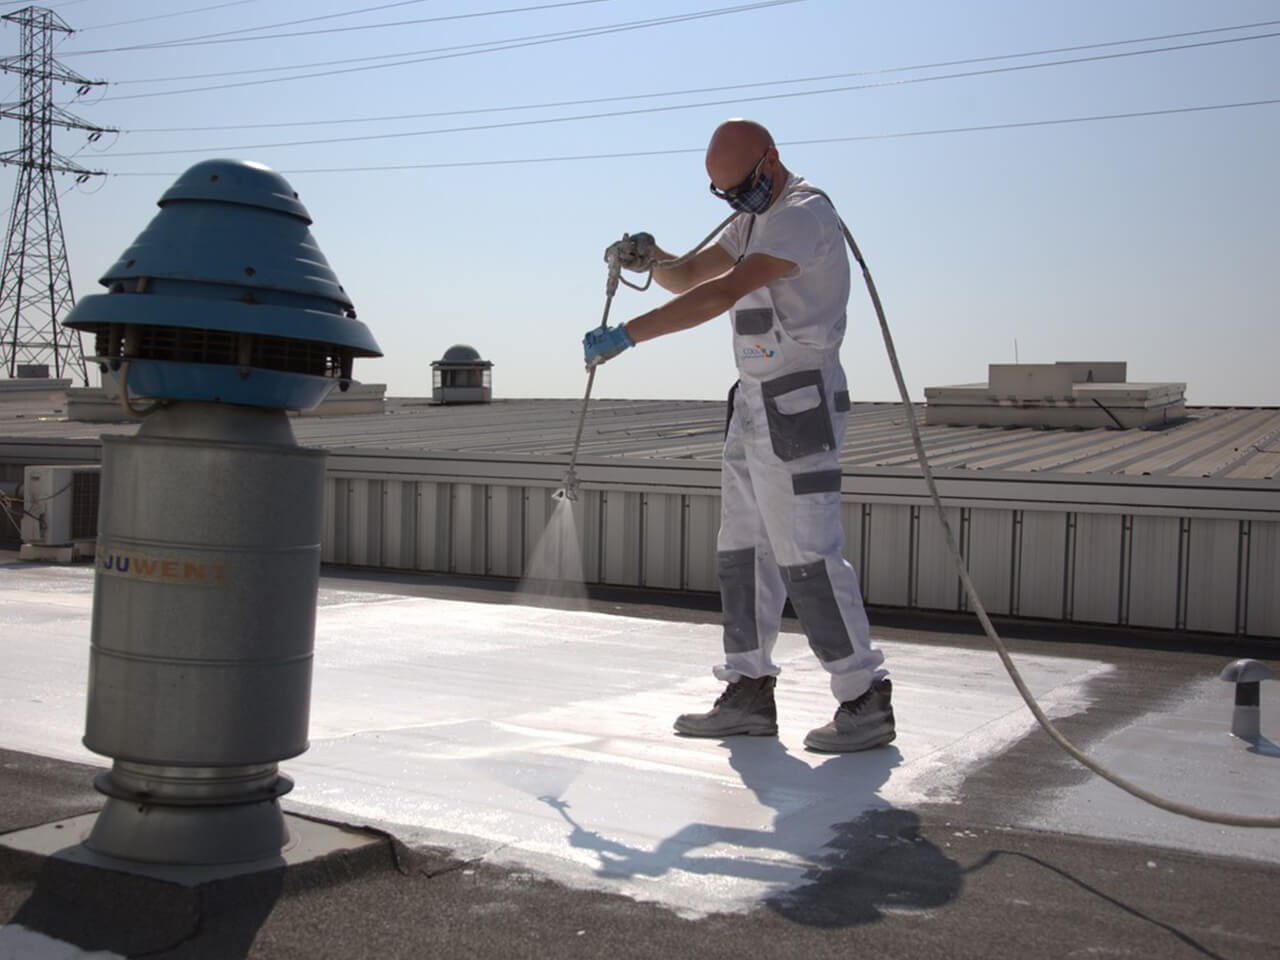 В Европе создали краску для крыш складов, которая помогает экономить на кондиционировании